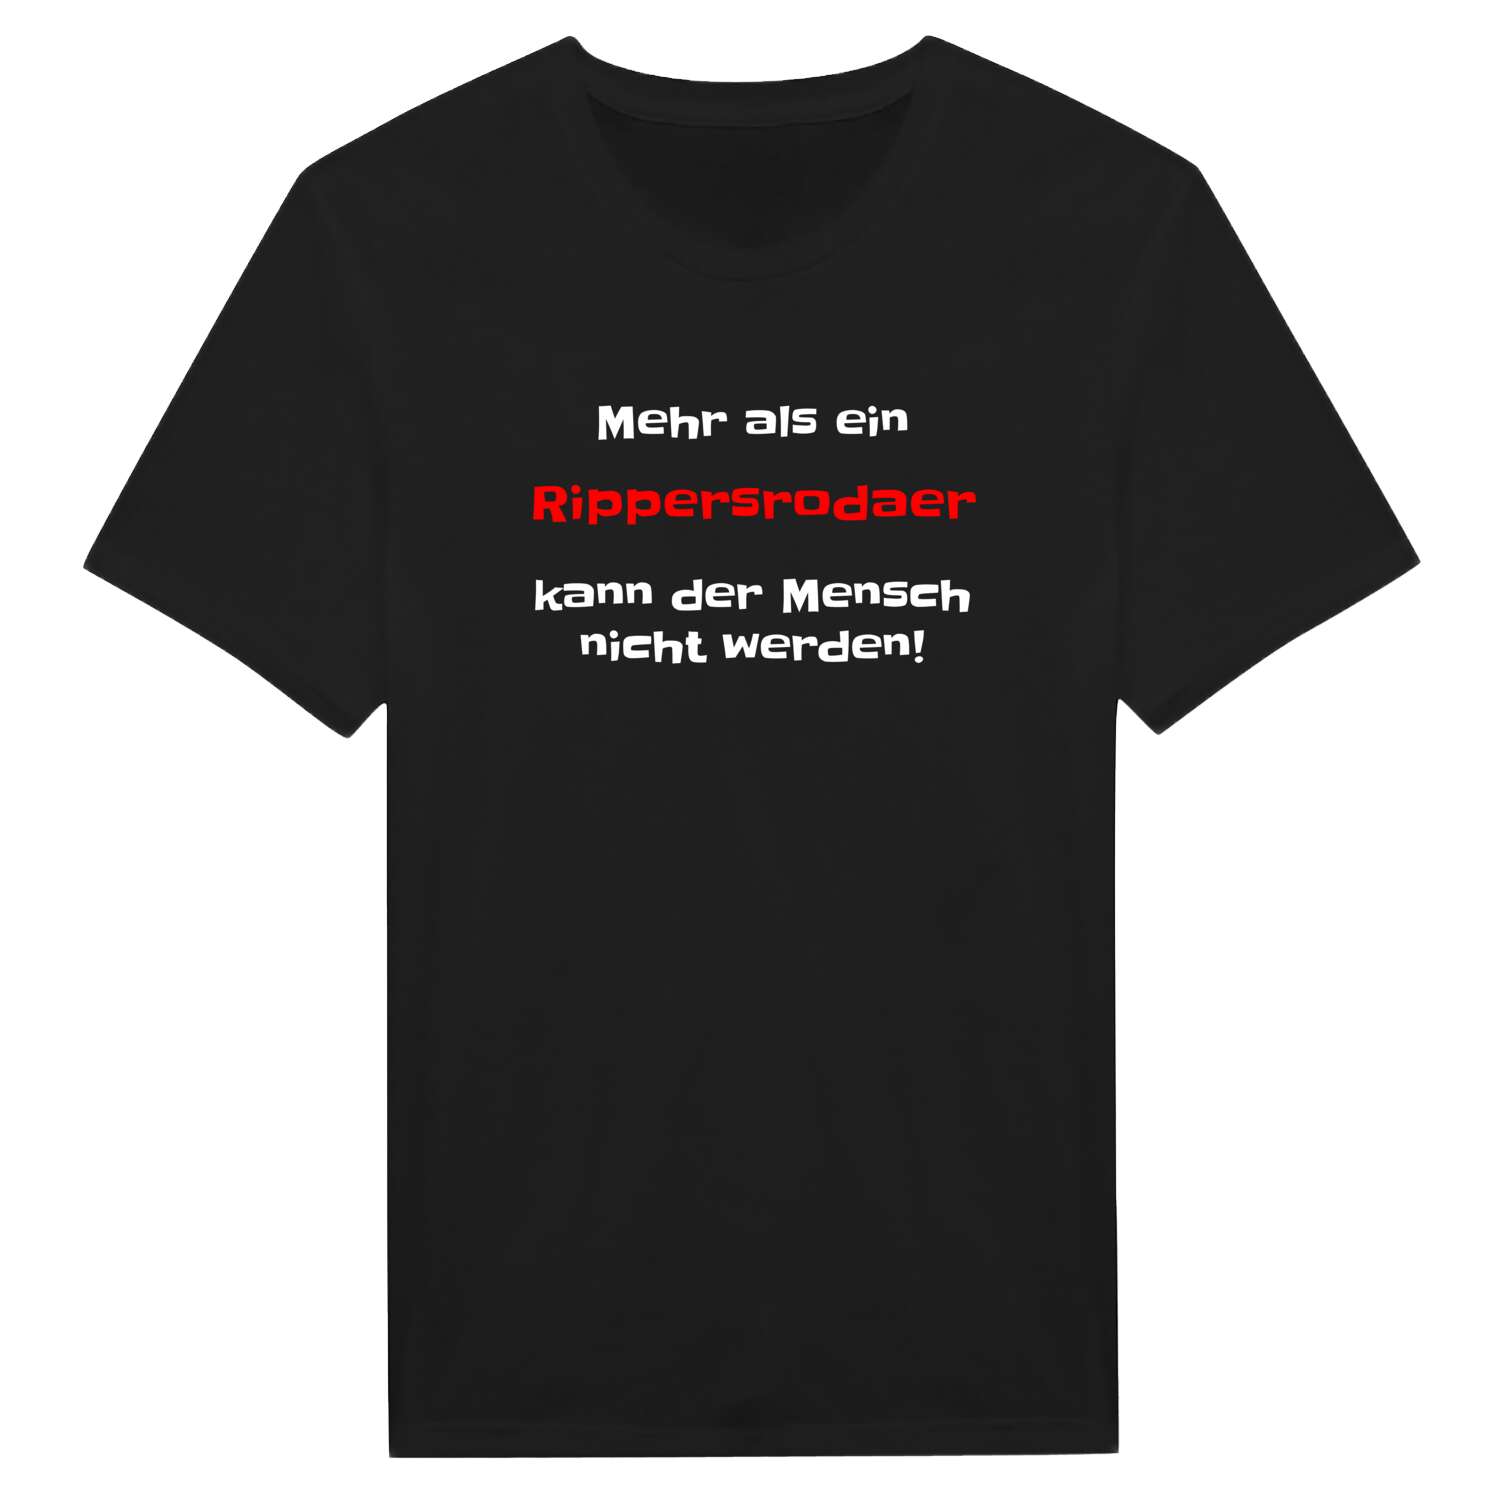 Rippersroda T-Shirt »Mehr als ein«